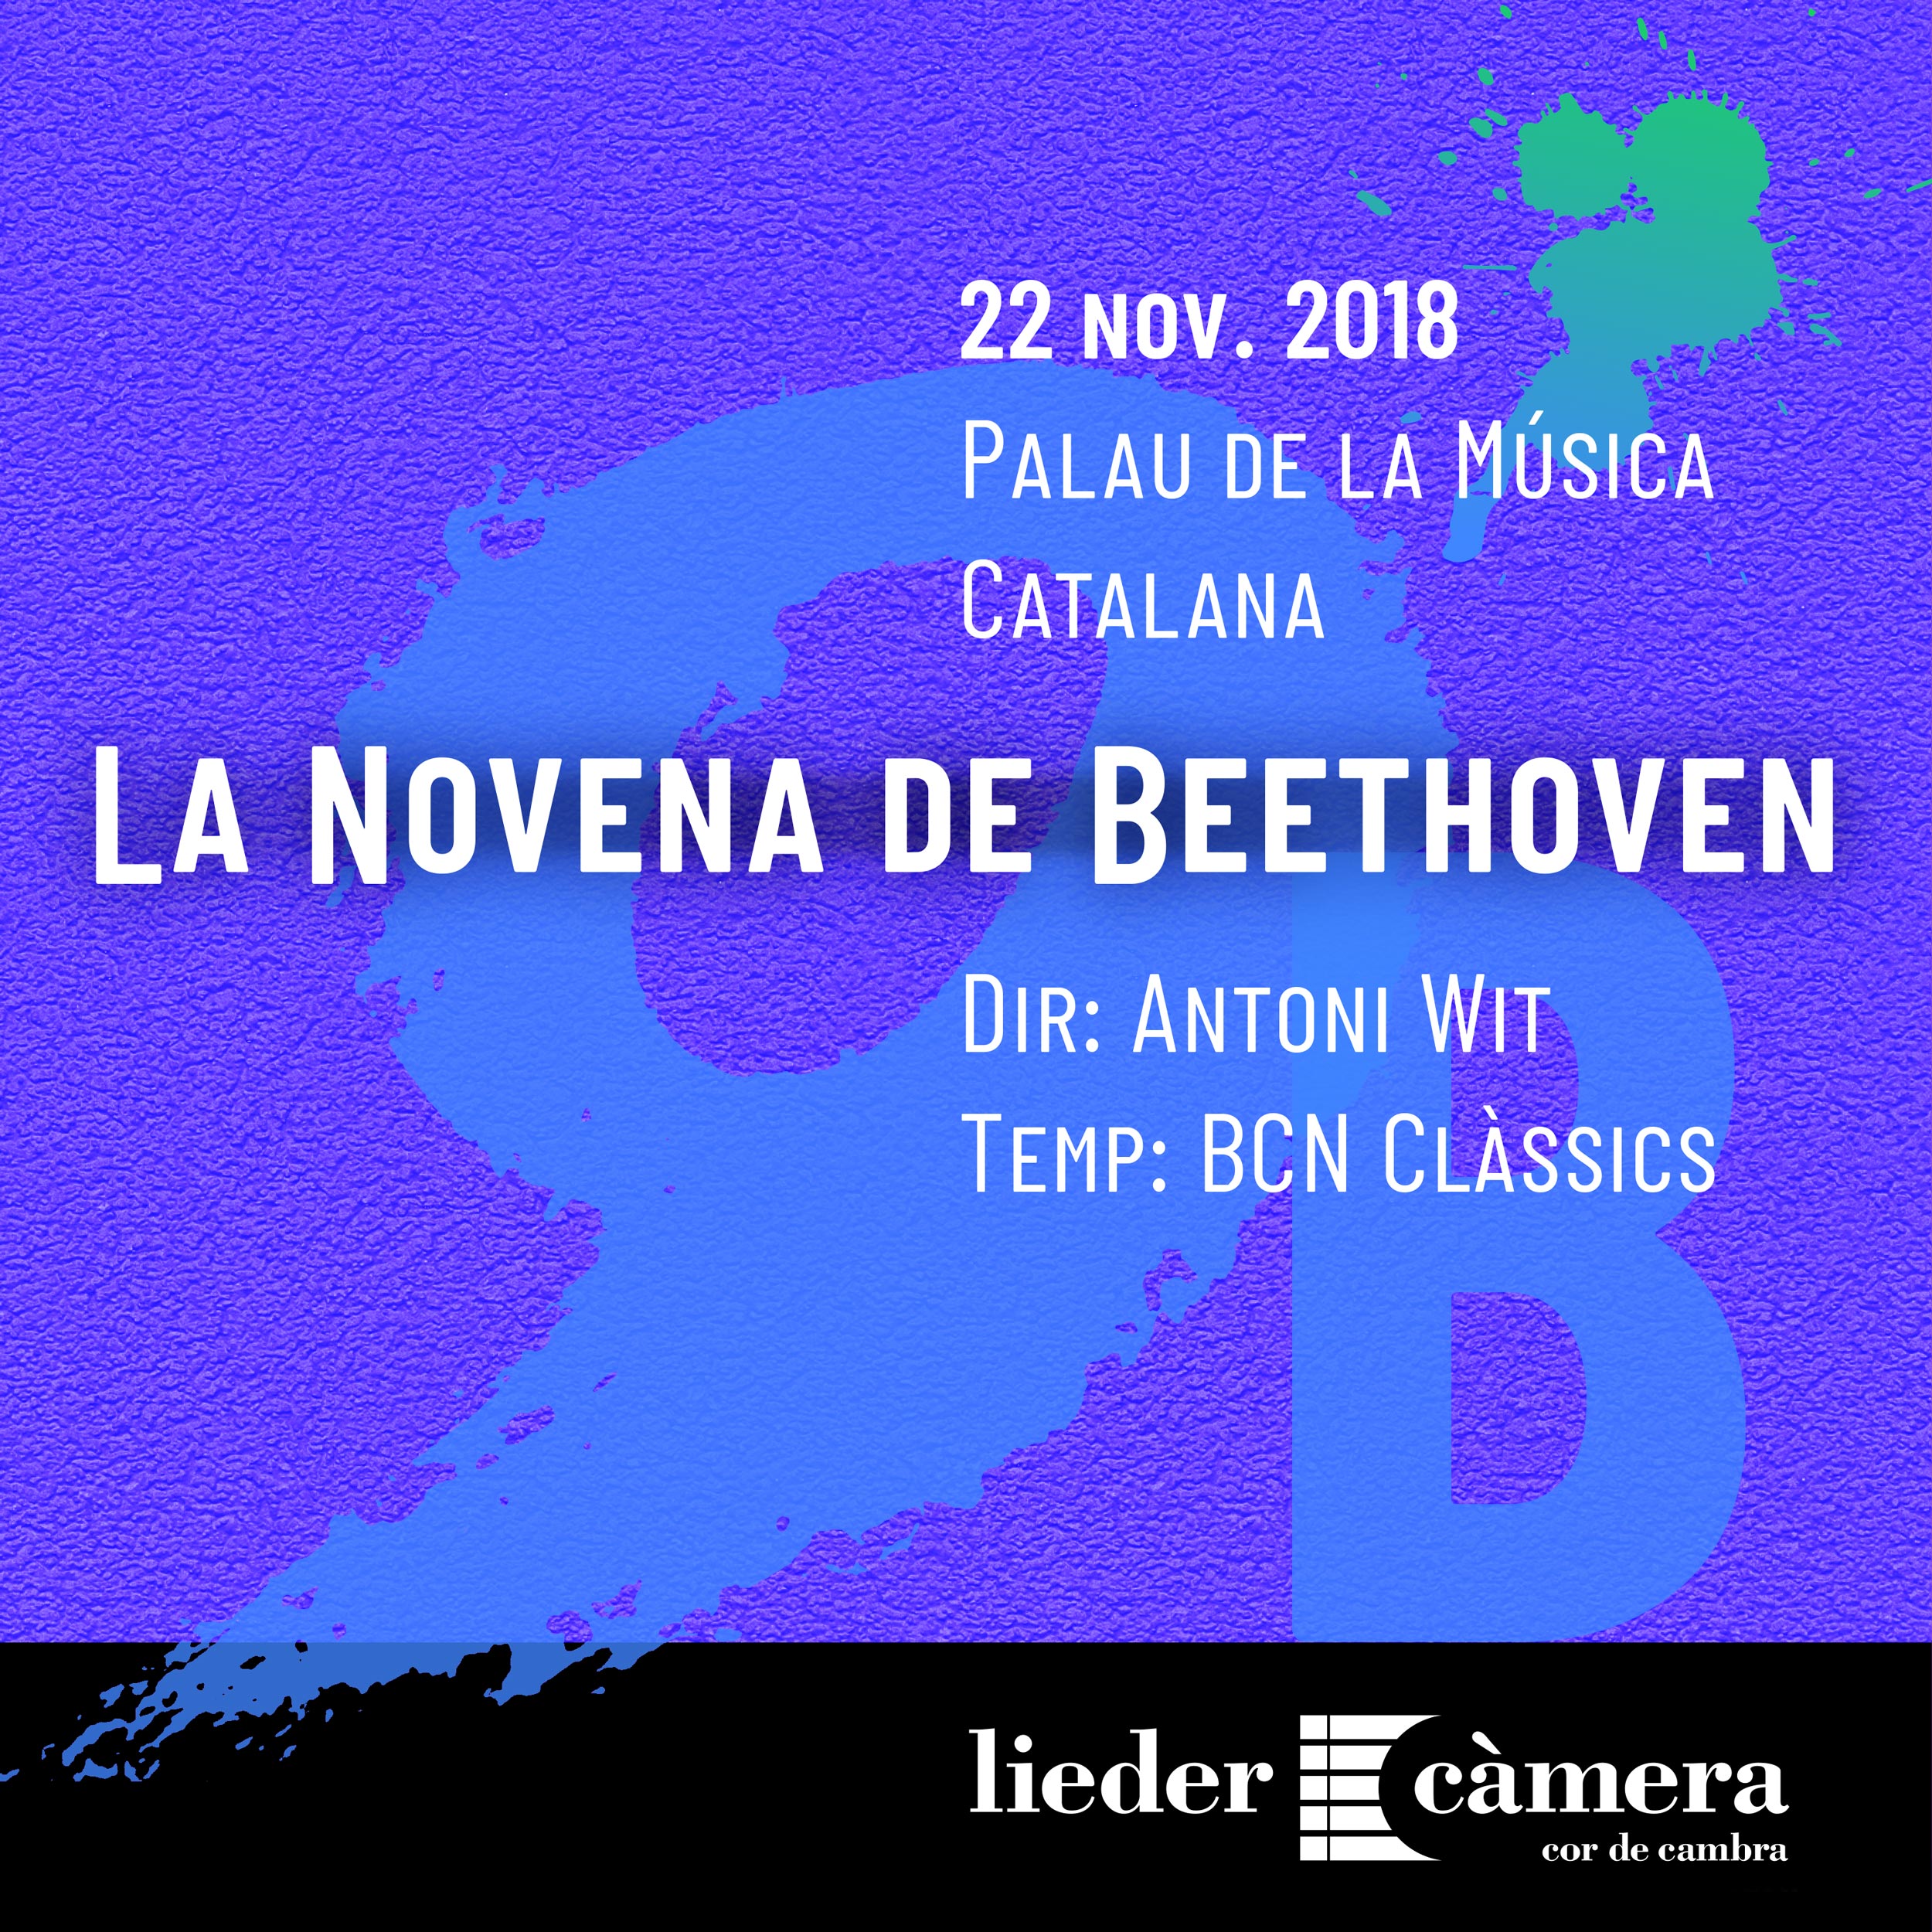 Beethoven; BCN-Classics; Orquestra de Cadaqués; Palau de la Música Catalana